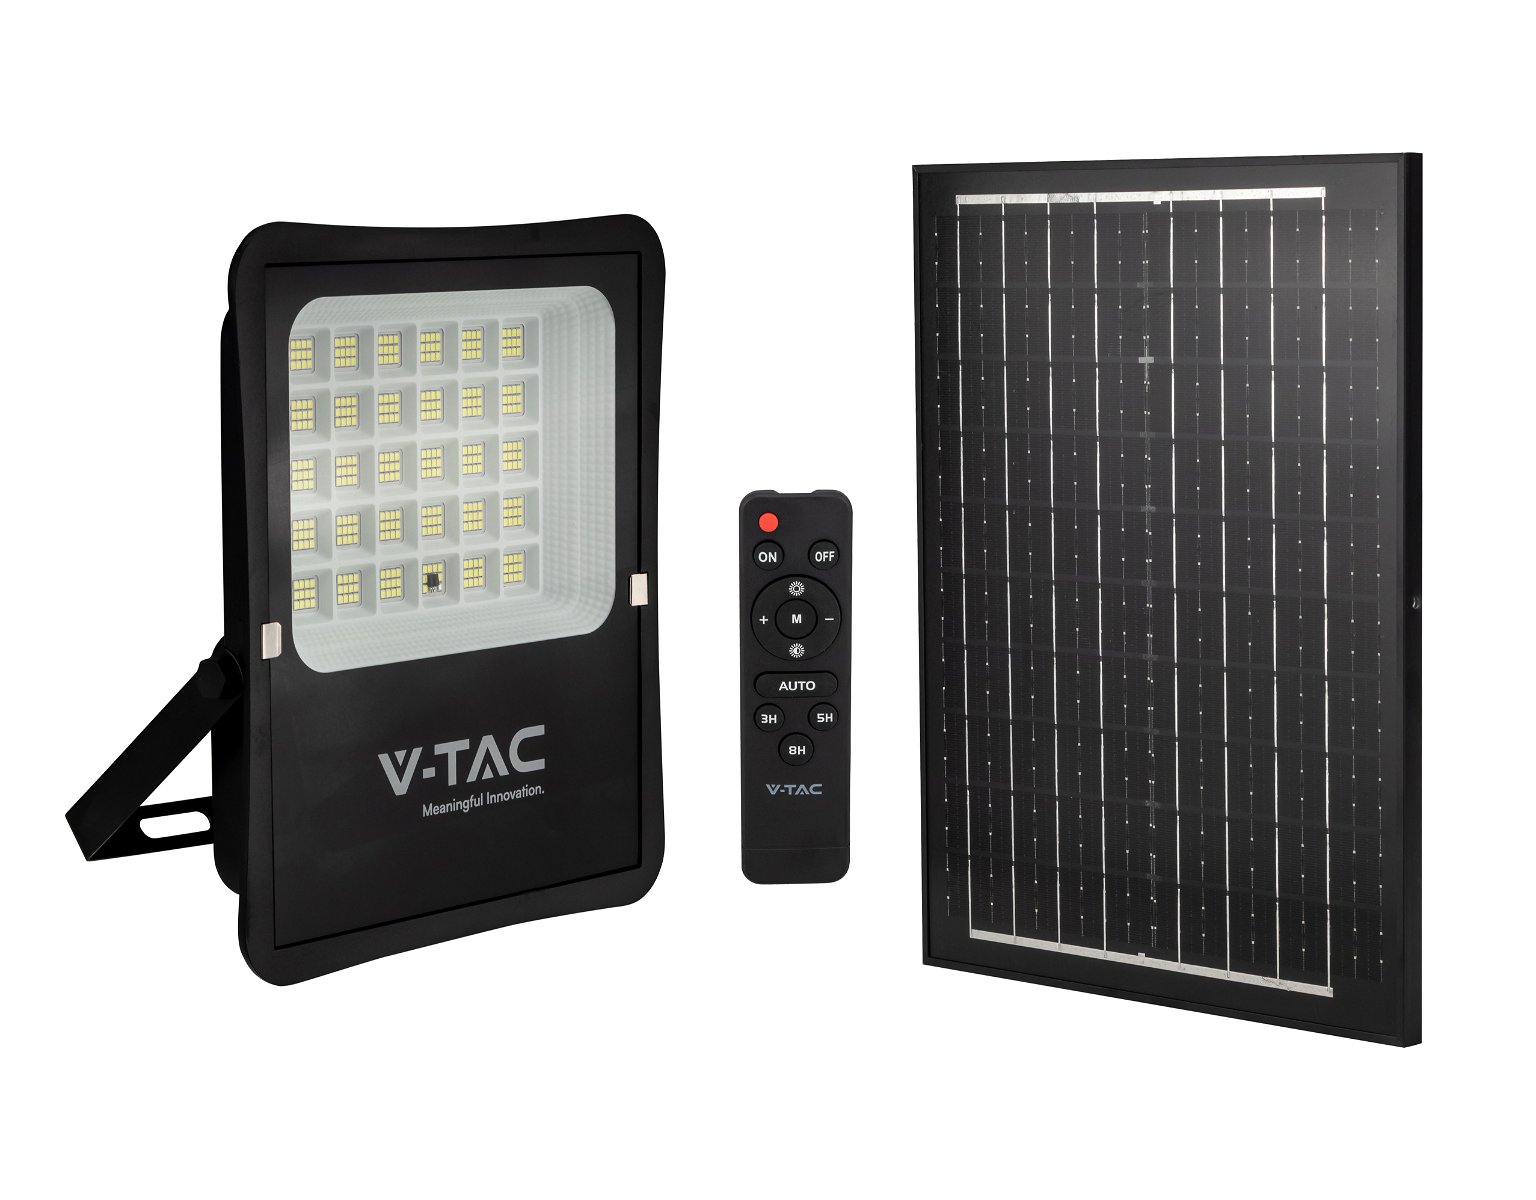 LED prožektorius V -TAC, įkraunamas saulės energija, IP65, 4000 K, 2400 lm, su pultu, juodos spalvos